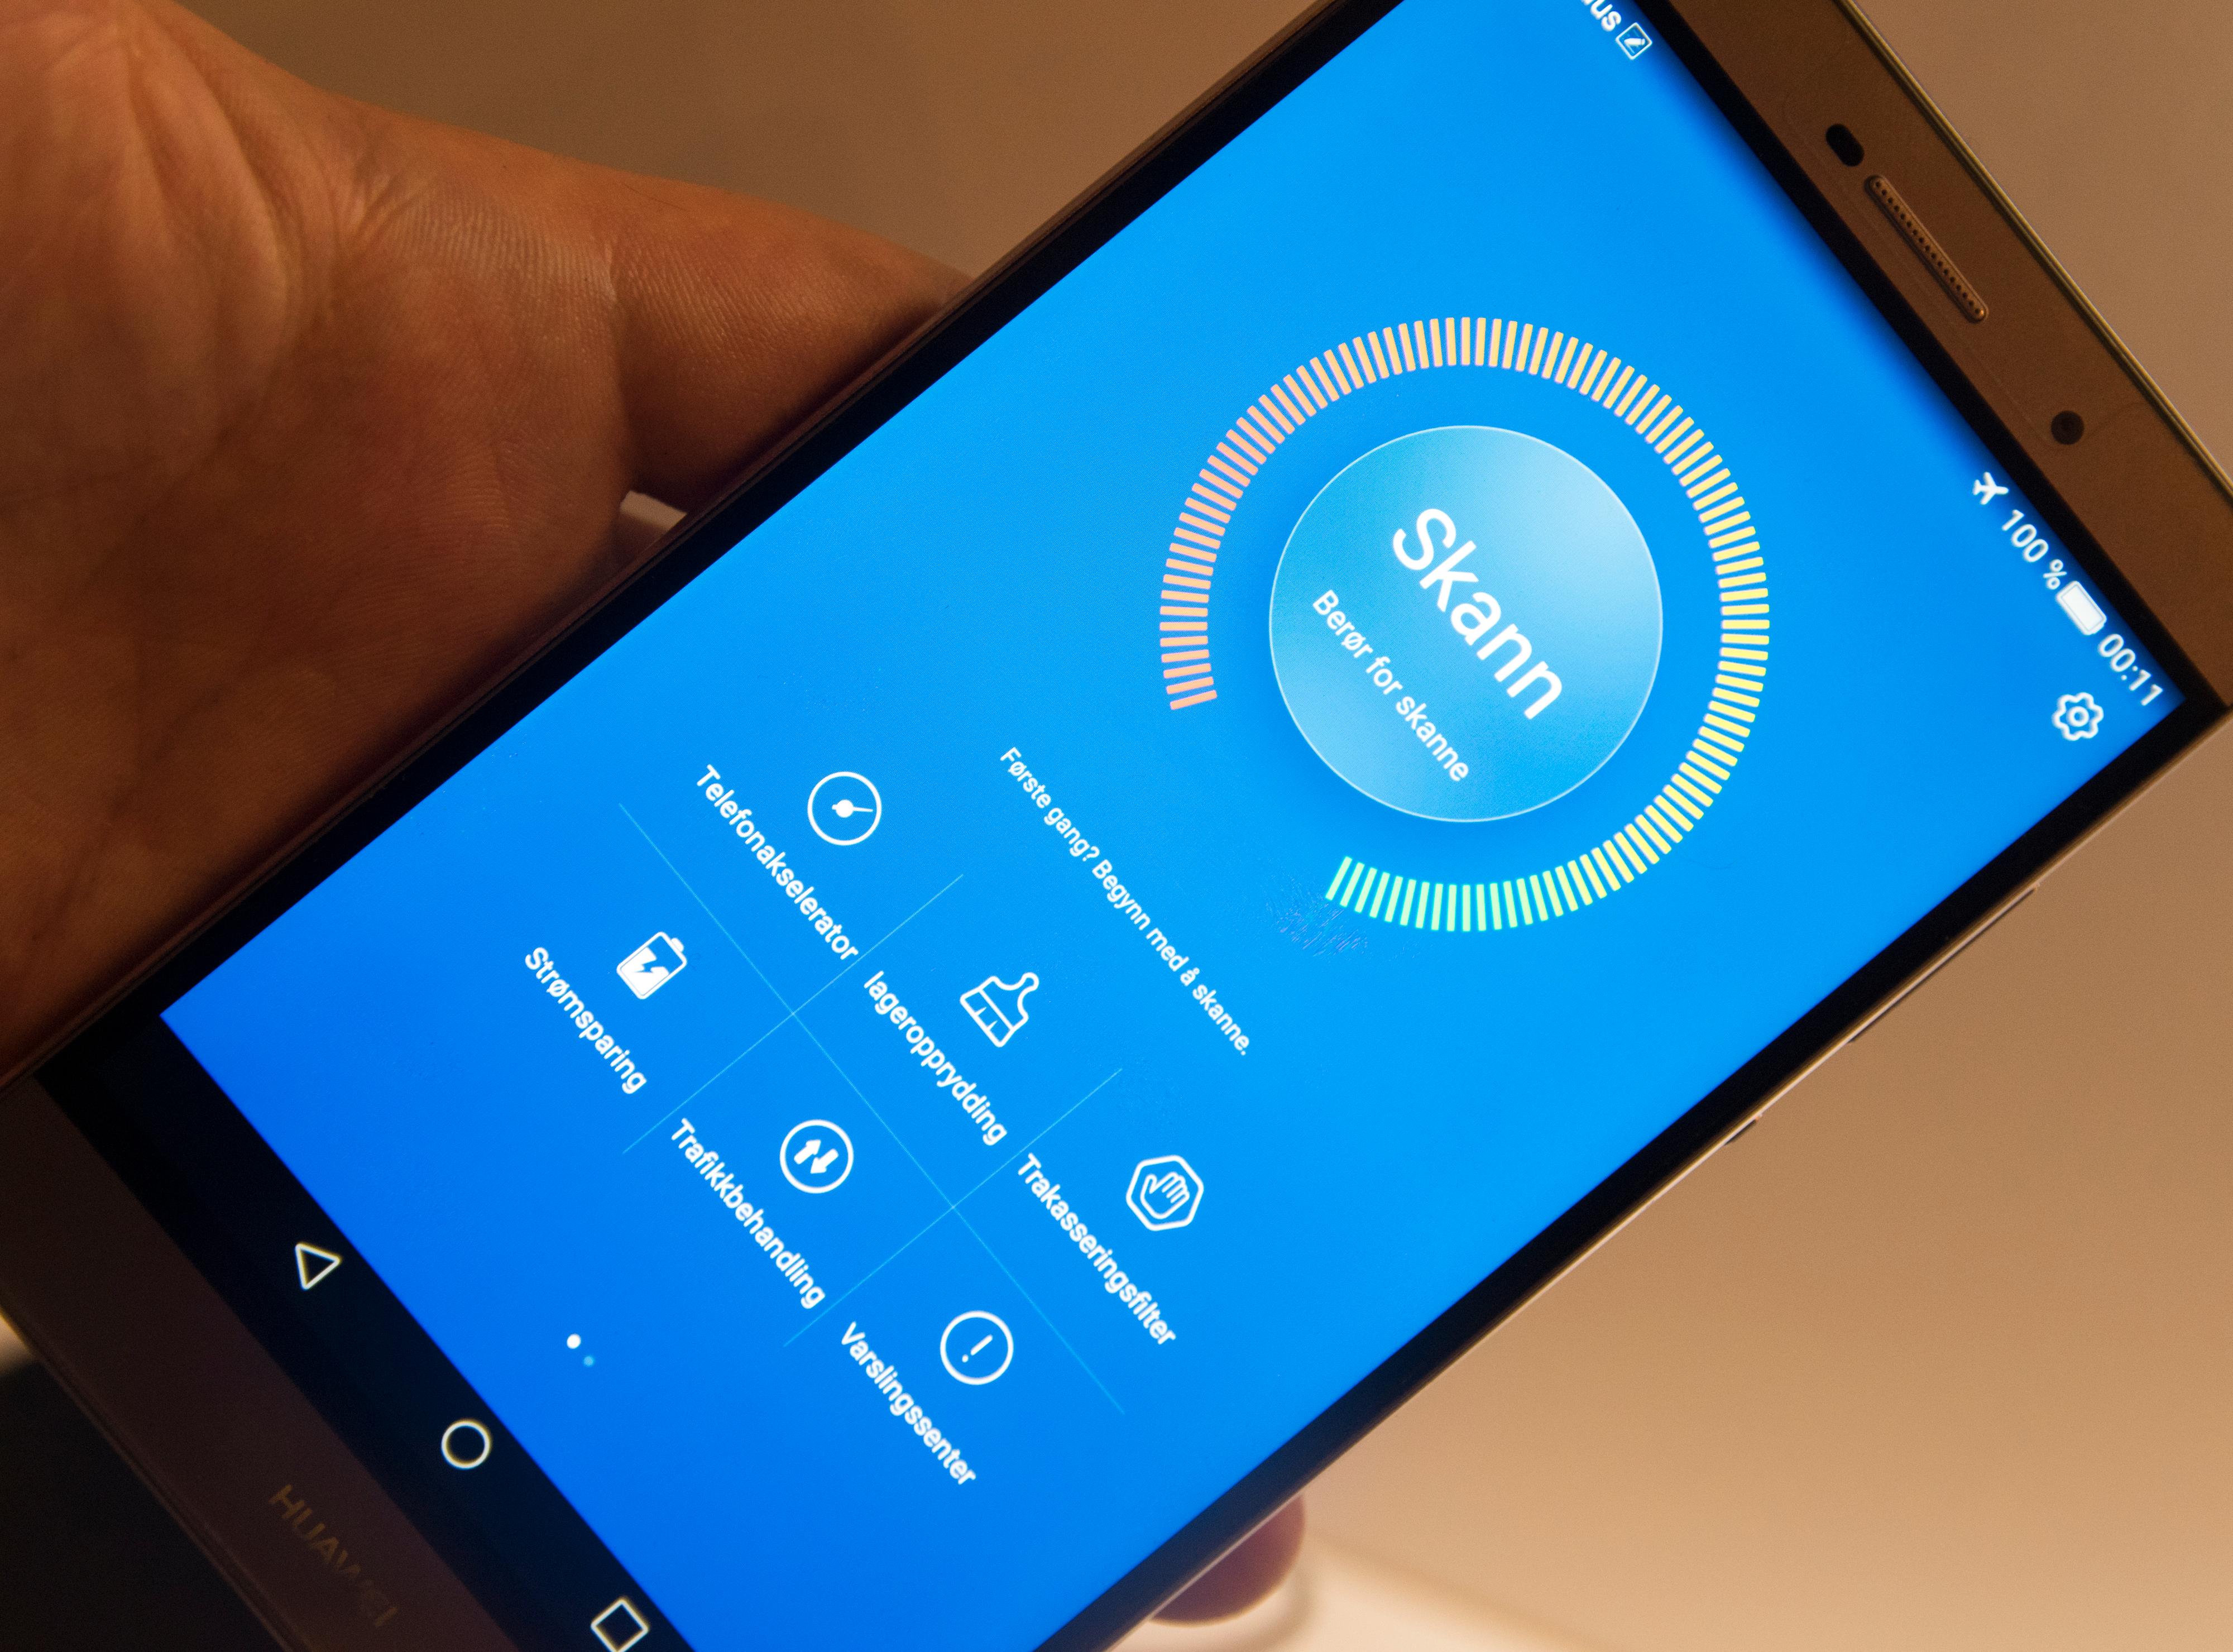 Huawei gjør mye med Android-menyene, og legger i tillegg ved egen programvare. Her er for eksempel en app som skal hjelpe deg med å holde telefonen ryddig og rask. Foto: Finn Jarle Kvalheim, Tek.no